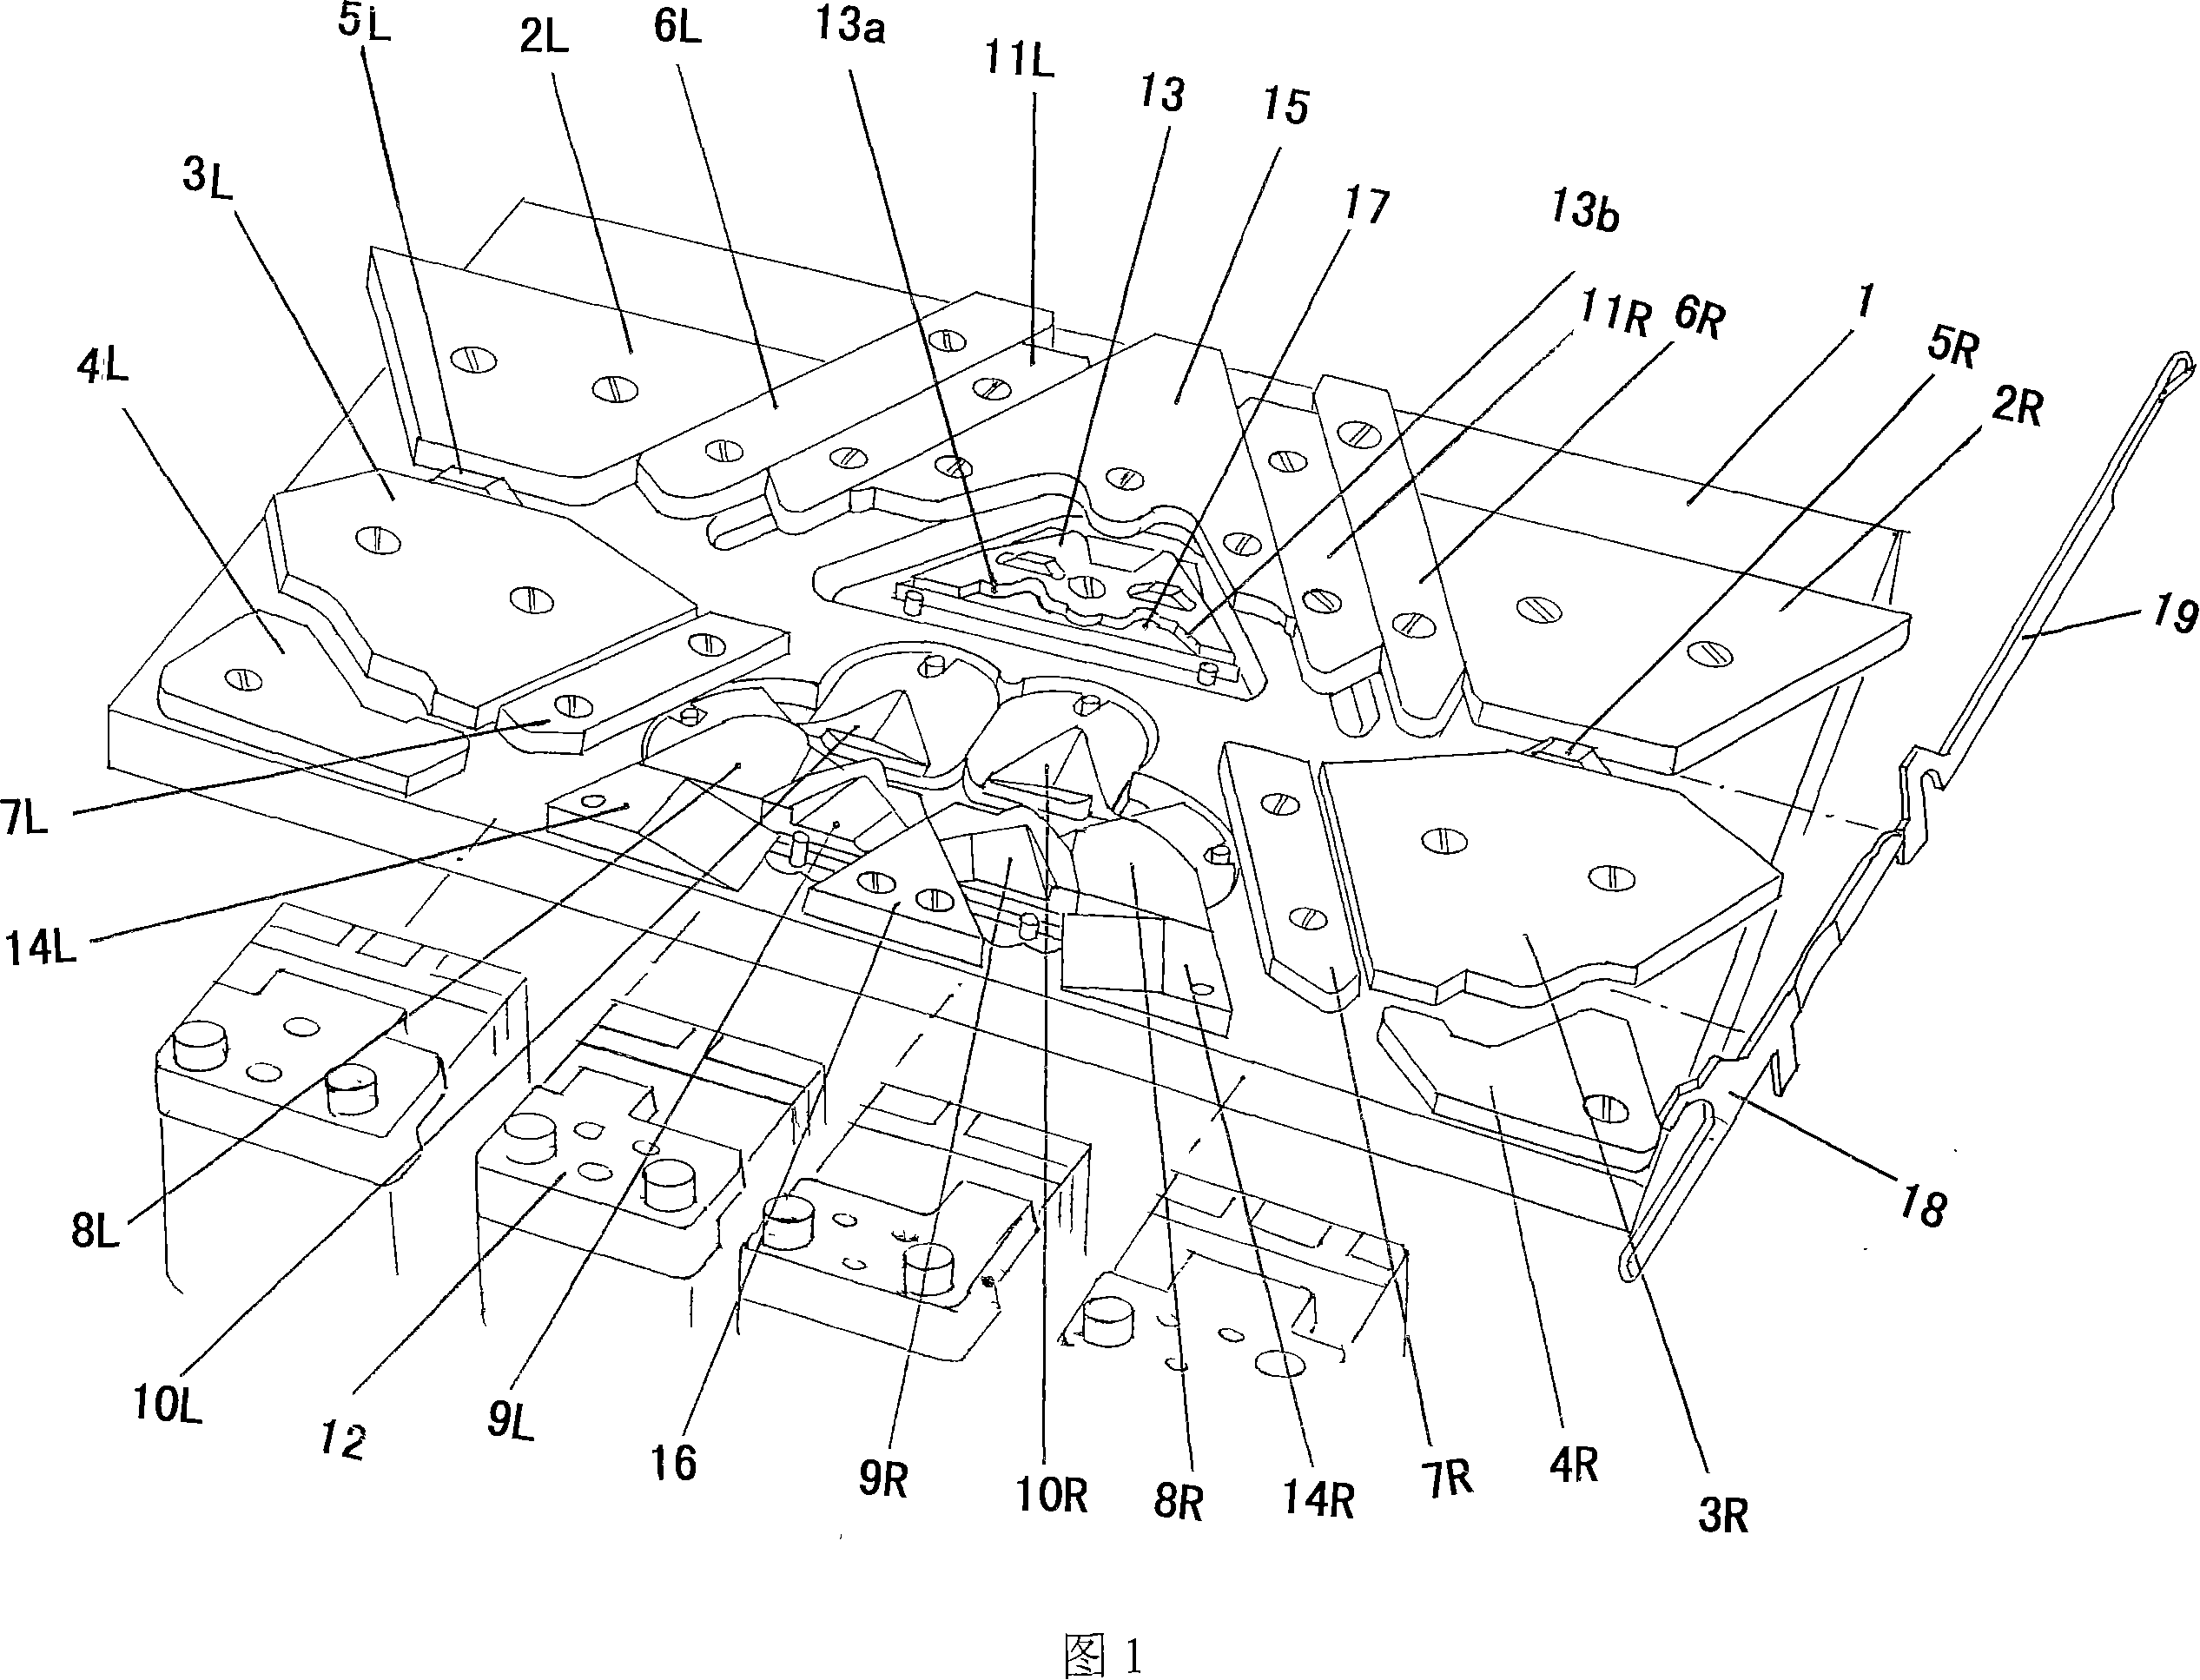 Triangle mechanism of computer plain flat knitter